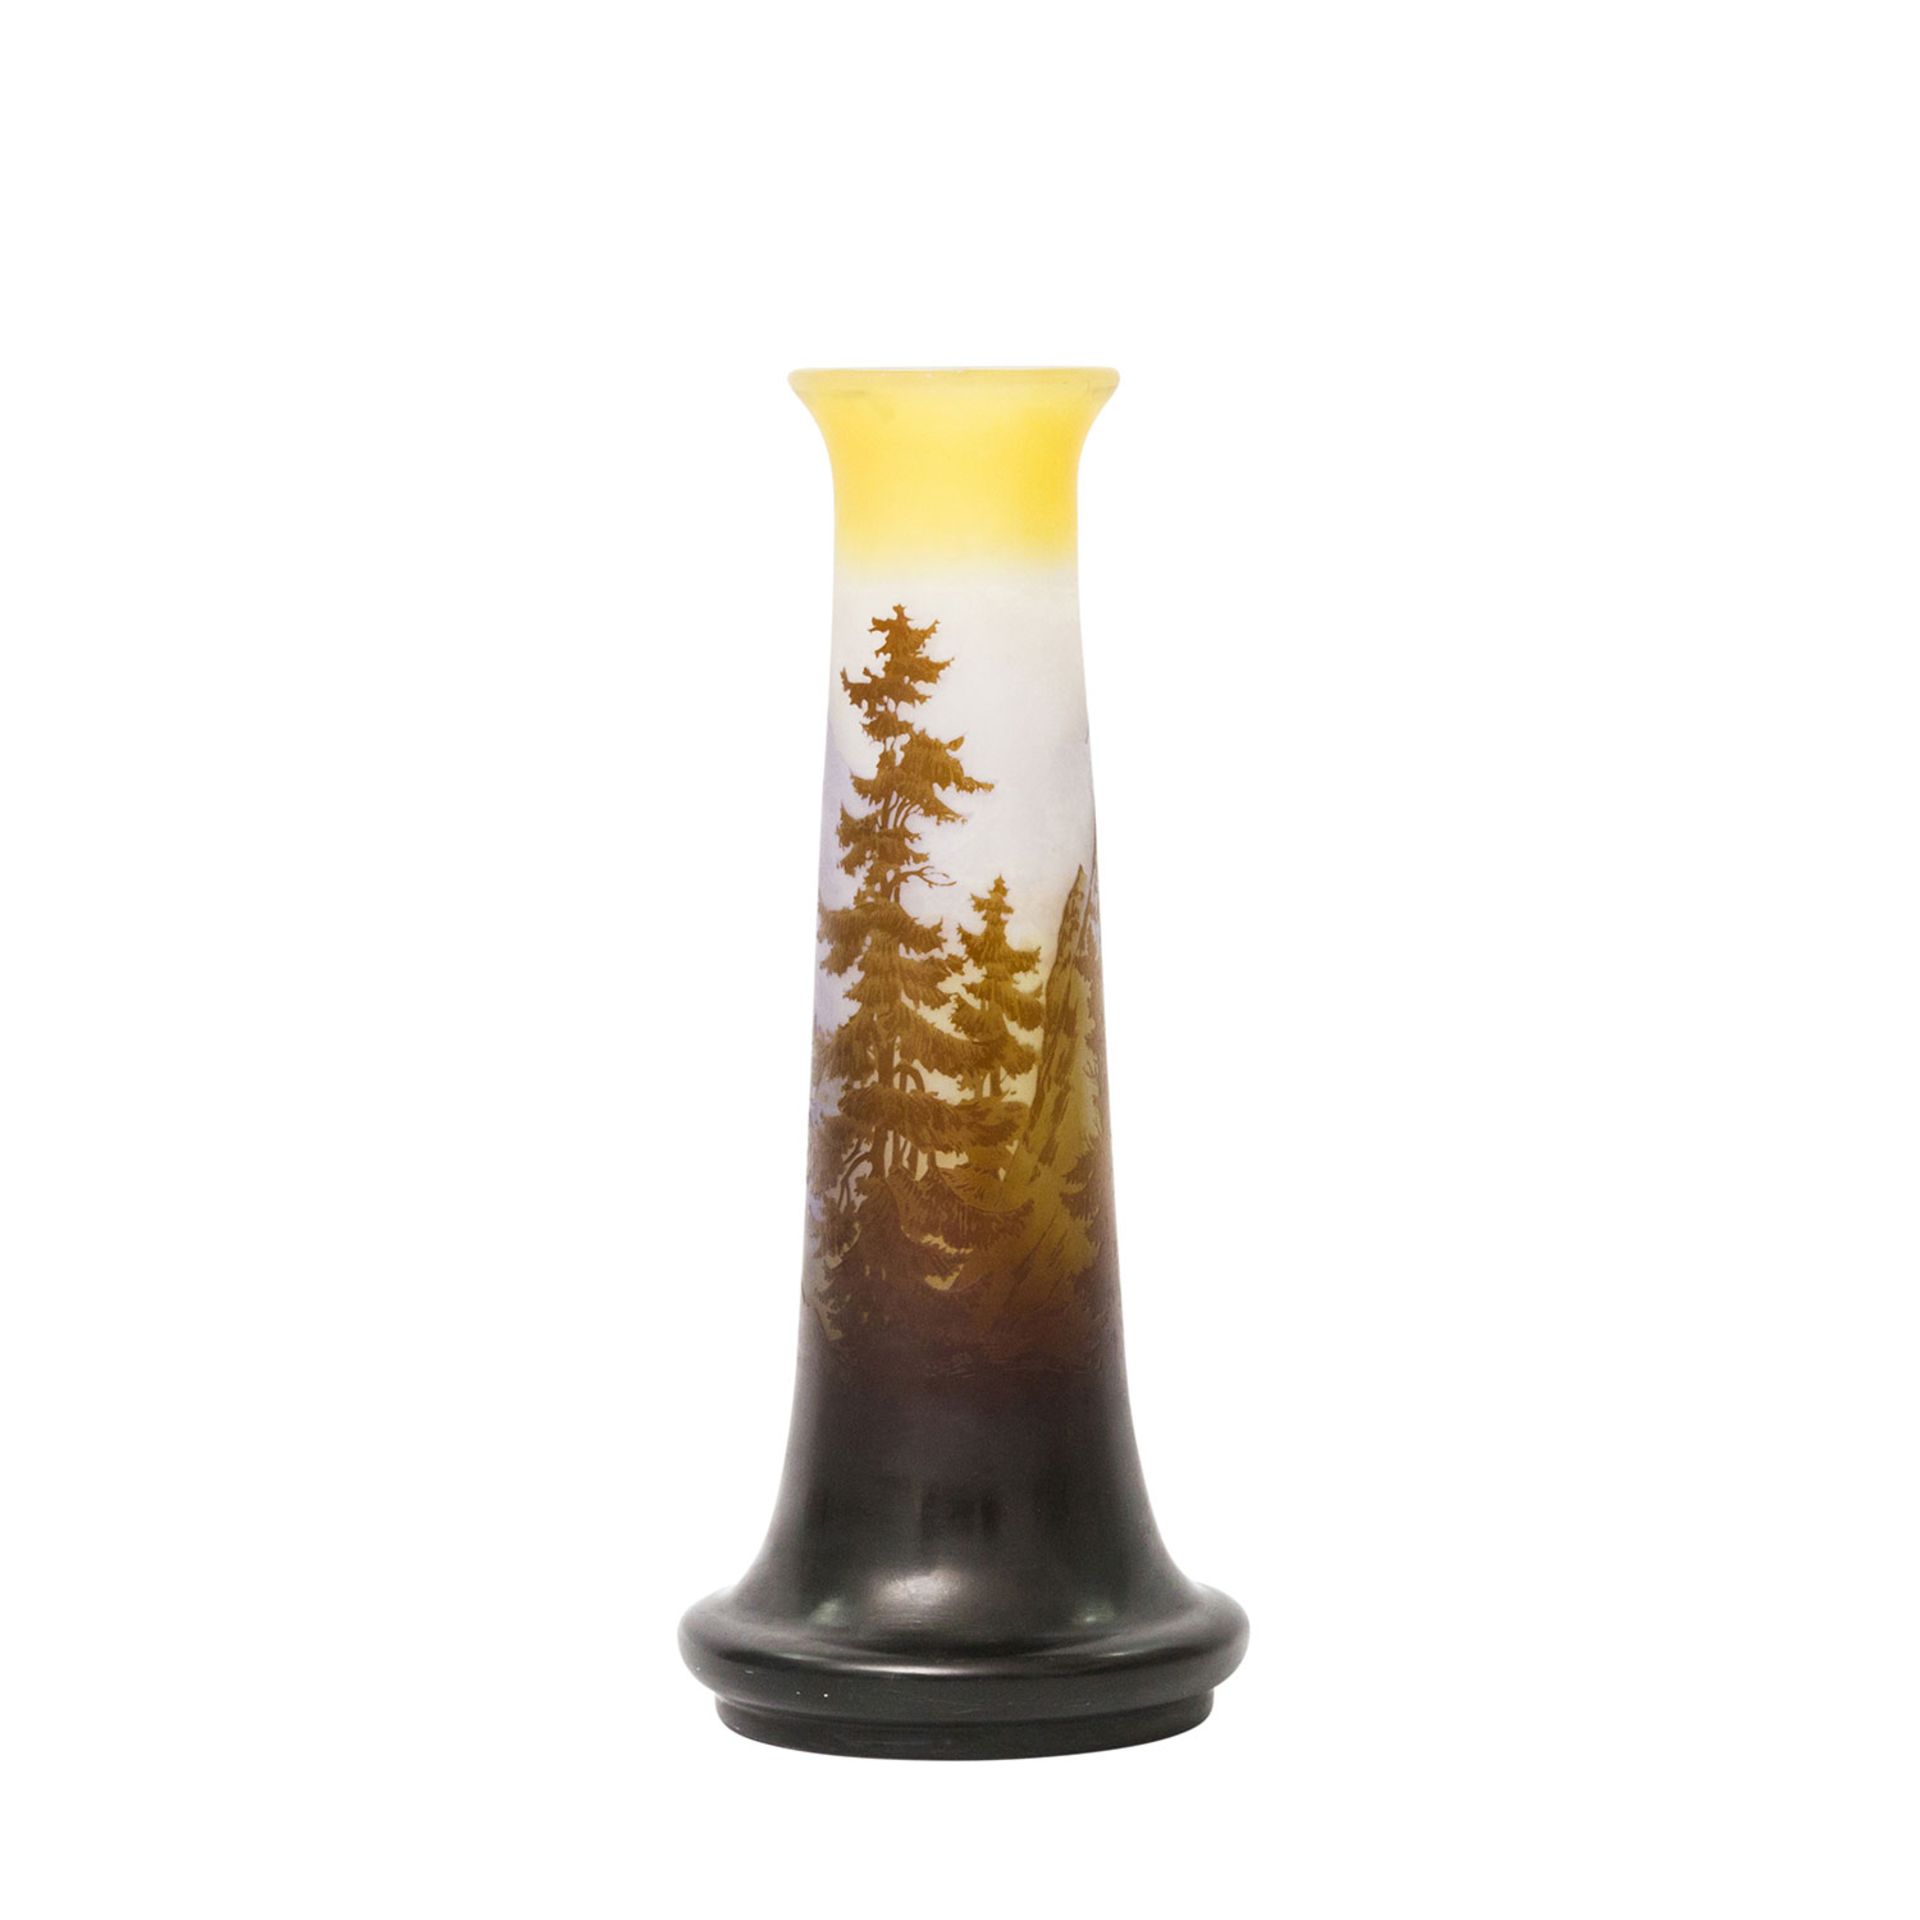 ÉMILE GALLÉ Vase mit Alpenpanorama, 1906-1914 farbloses Glas, gelb und braun überfangen, in mehreren